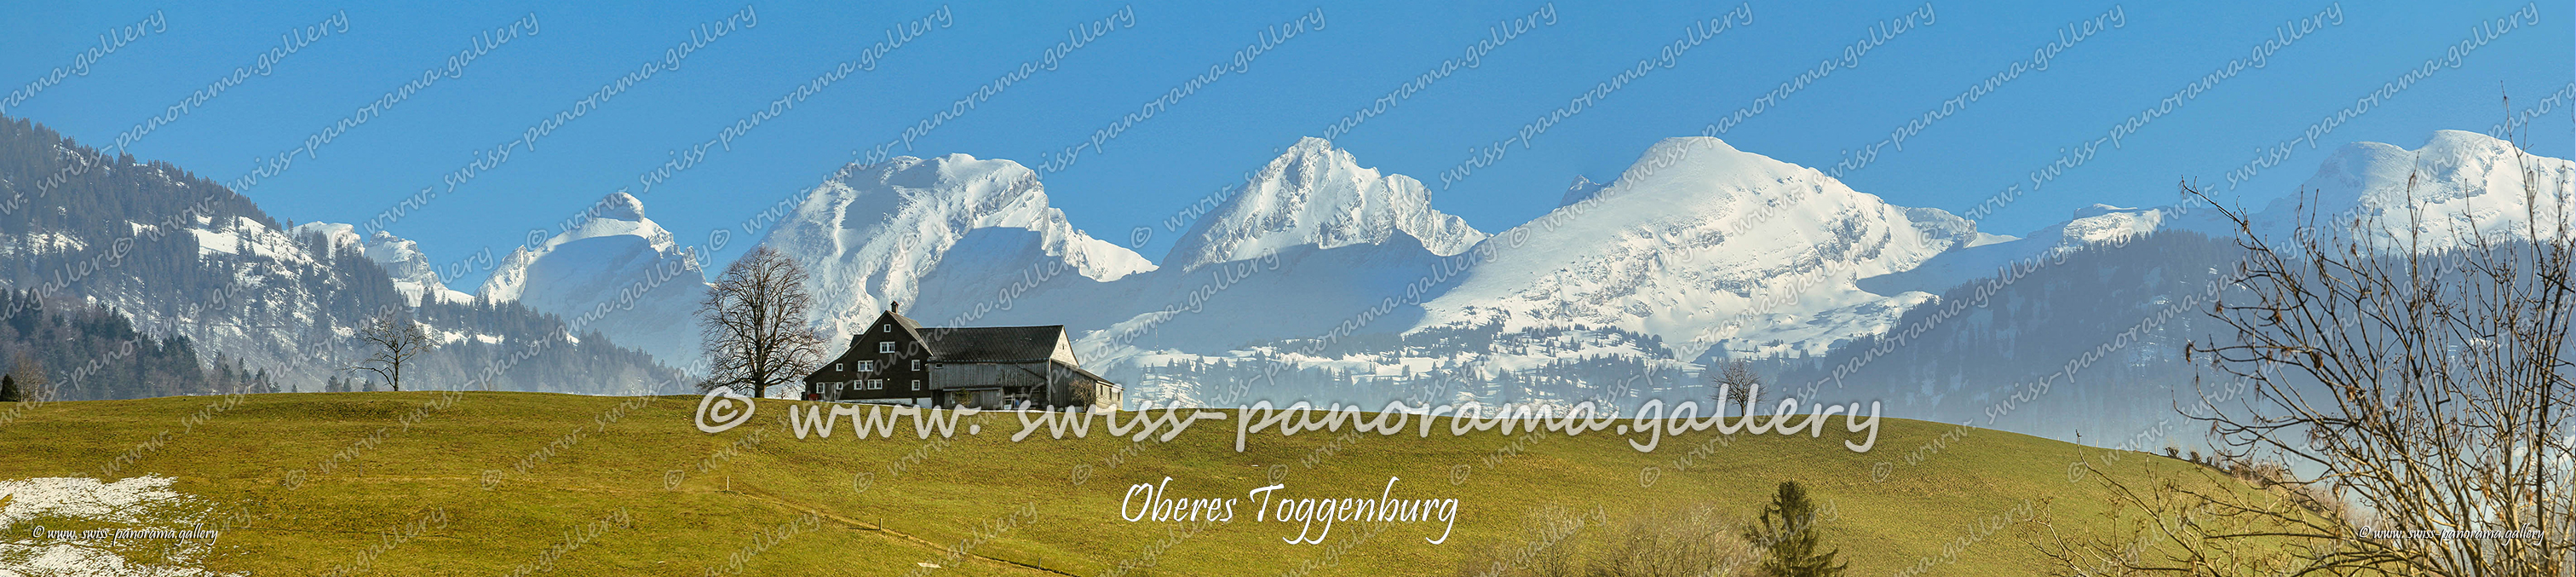 Churfirsten Alpen Panorama Toggenburg chweizer Alpen panorama; Neu St. Johann; swiss-panorama.gallery; Schären 2194m 10.1km; Wart 2068m 10.1km; Selun 2205m 10.1km; Brisi 2279m 10.9km; Brisi 2279m 10.9km; Zuestoll 2235m 11.1km; Schibenstoll 2236m 11.5km